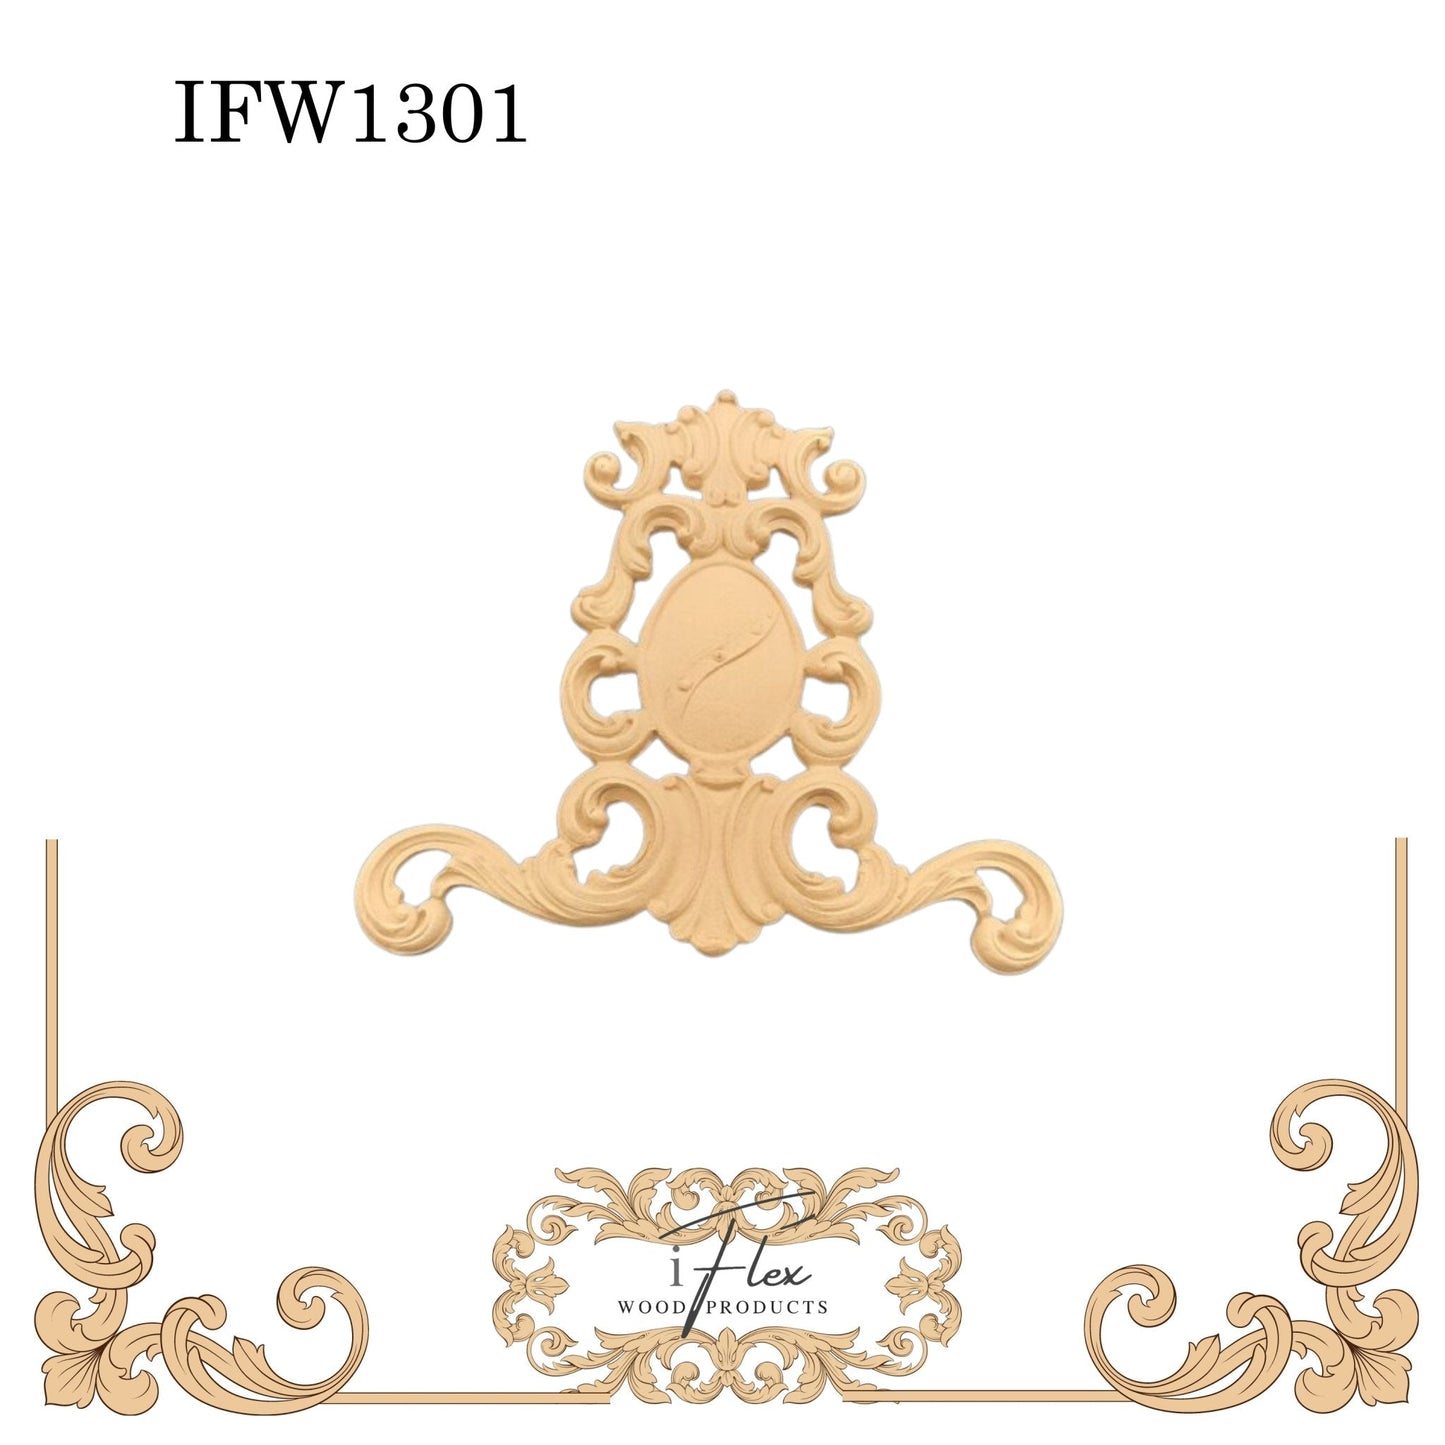 IFW 1301